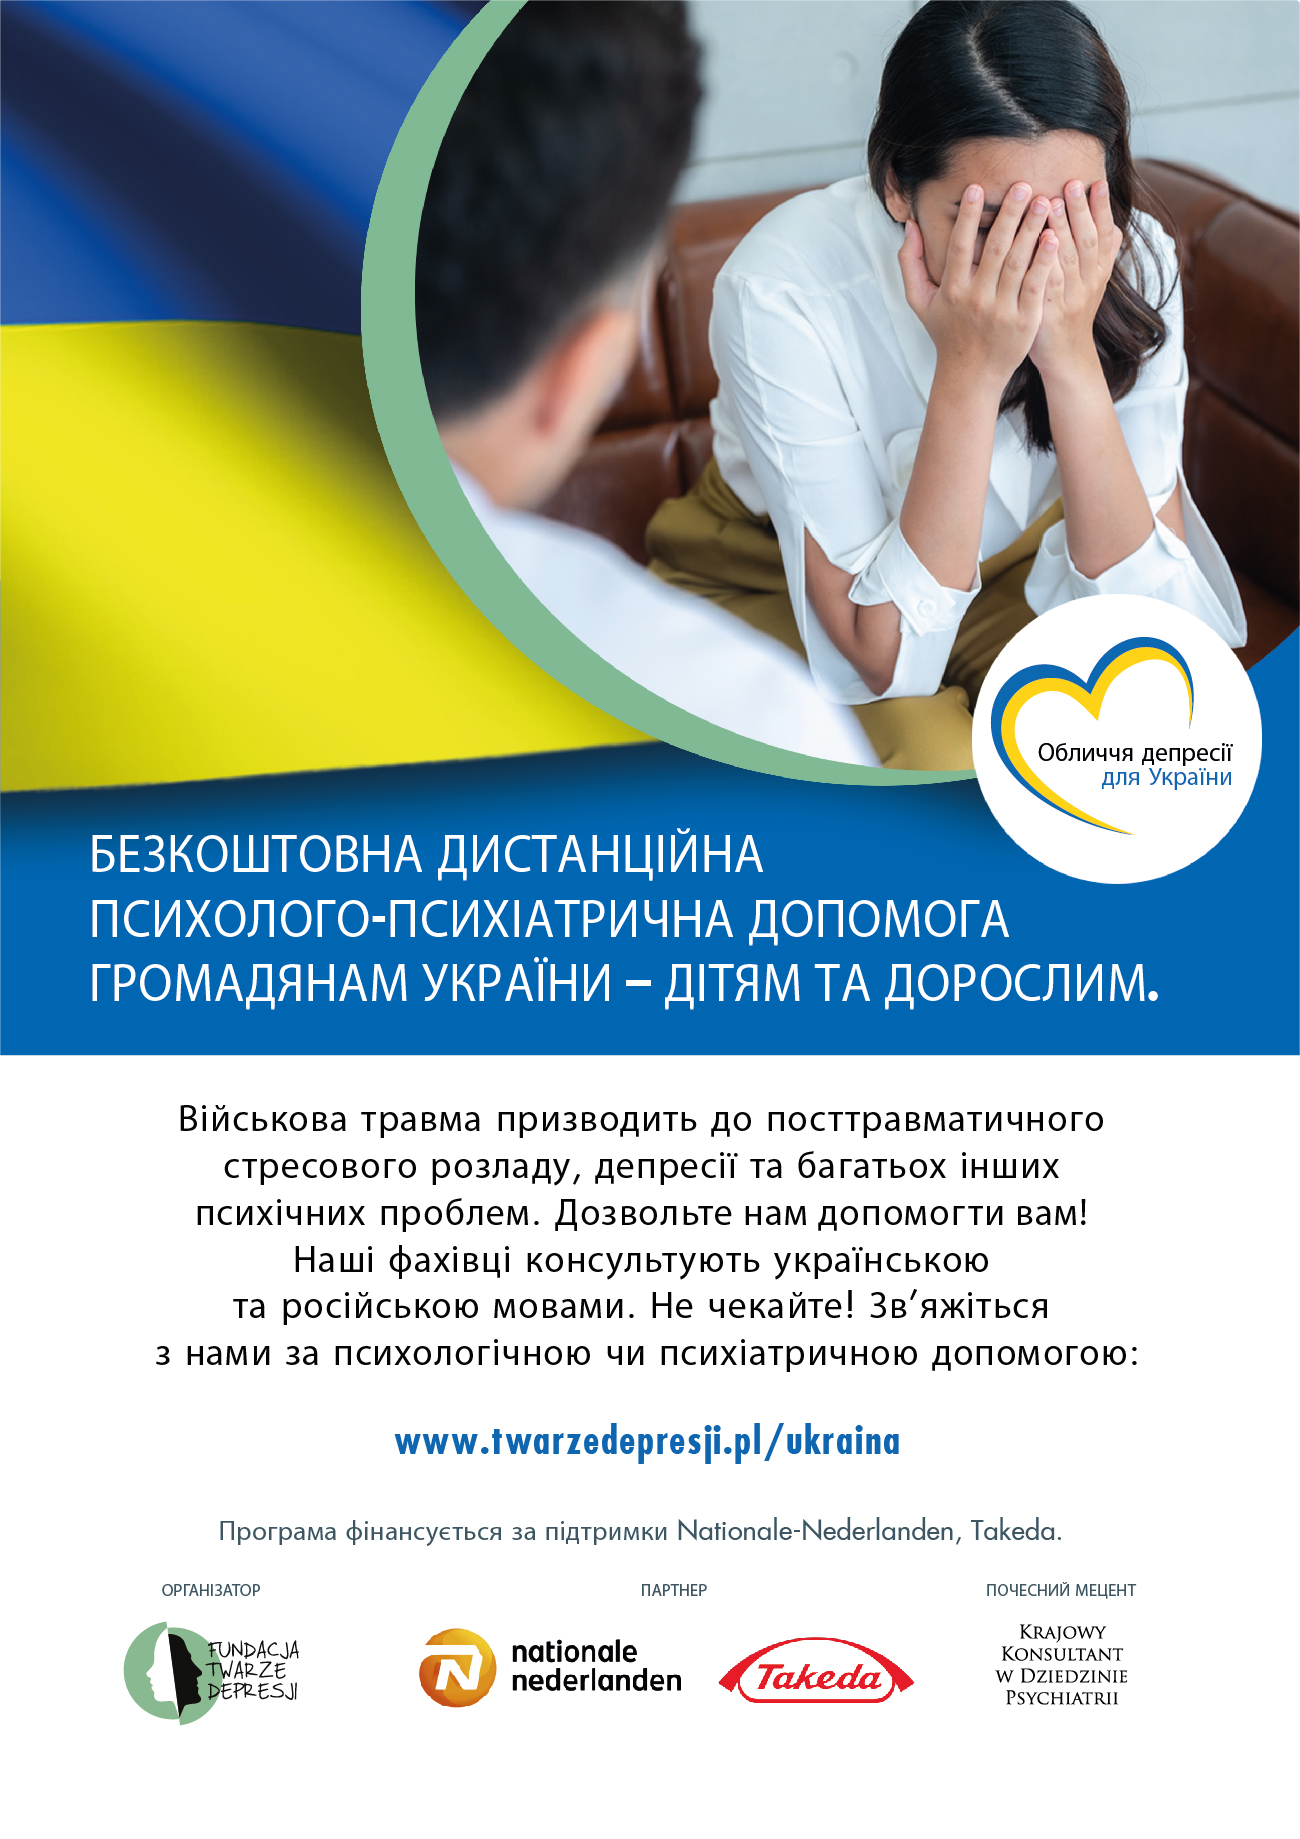 Pomoc psychologiczna dla Ukrainy Fundacji Twarze Depresji